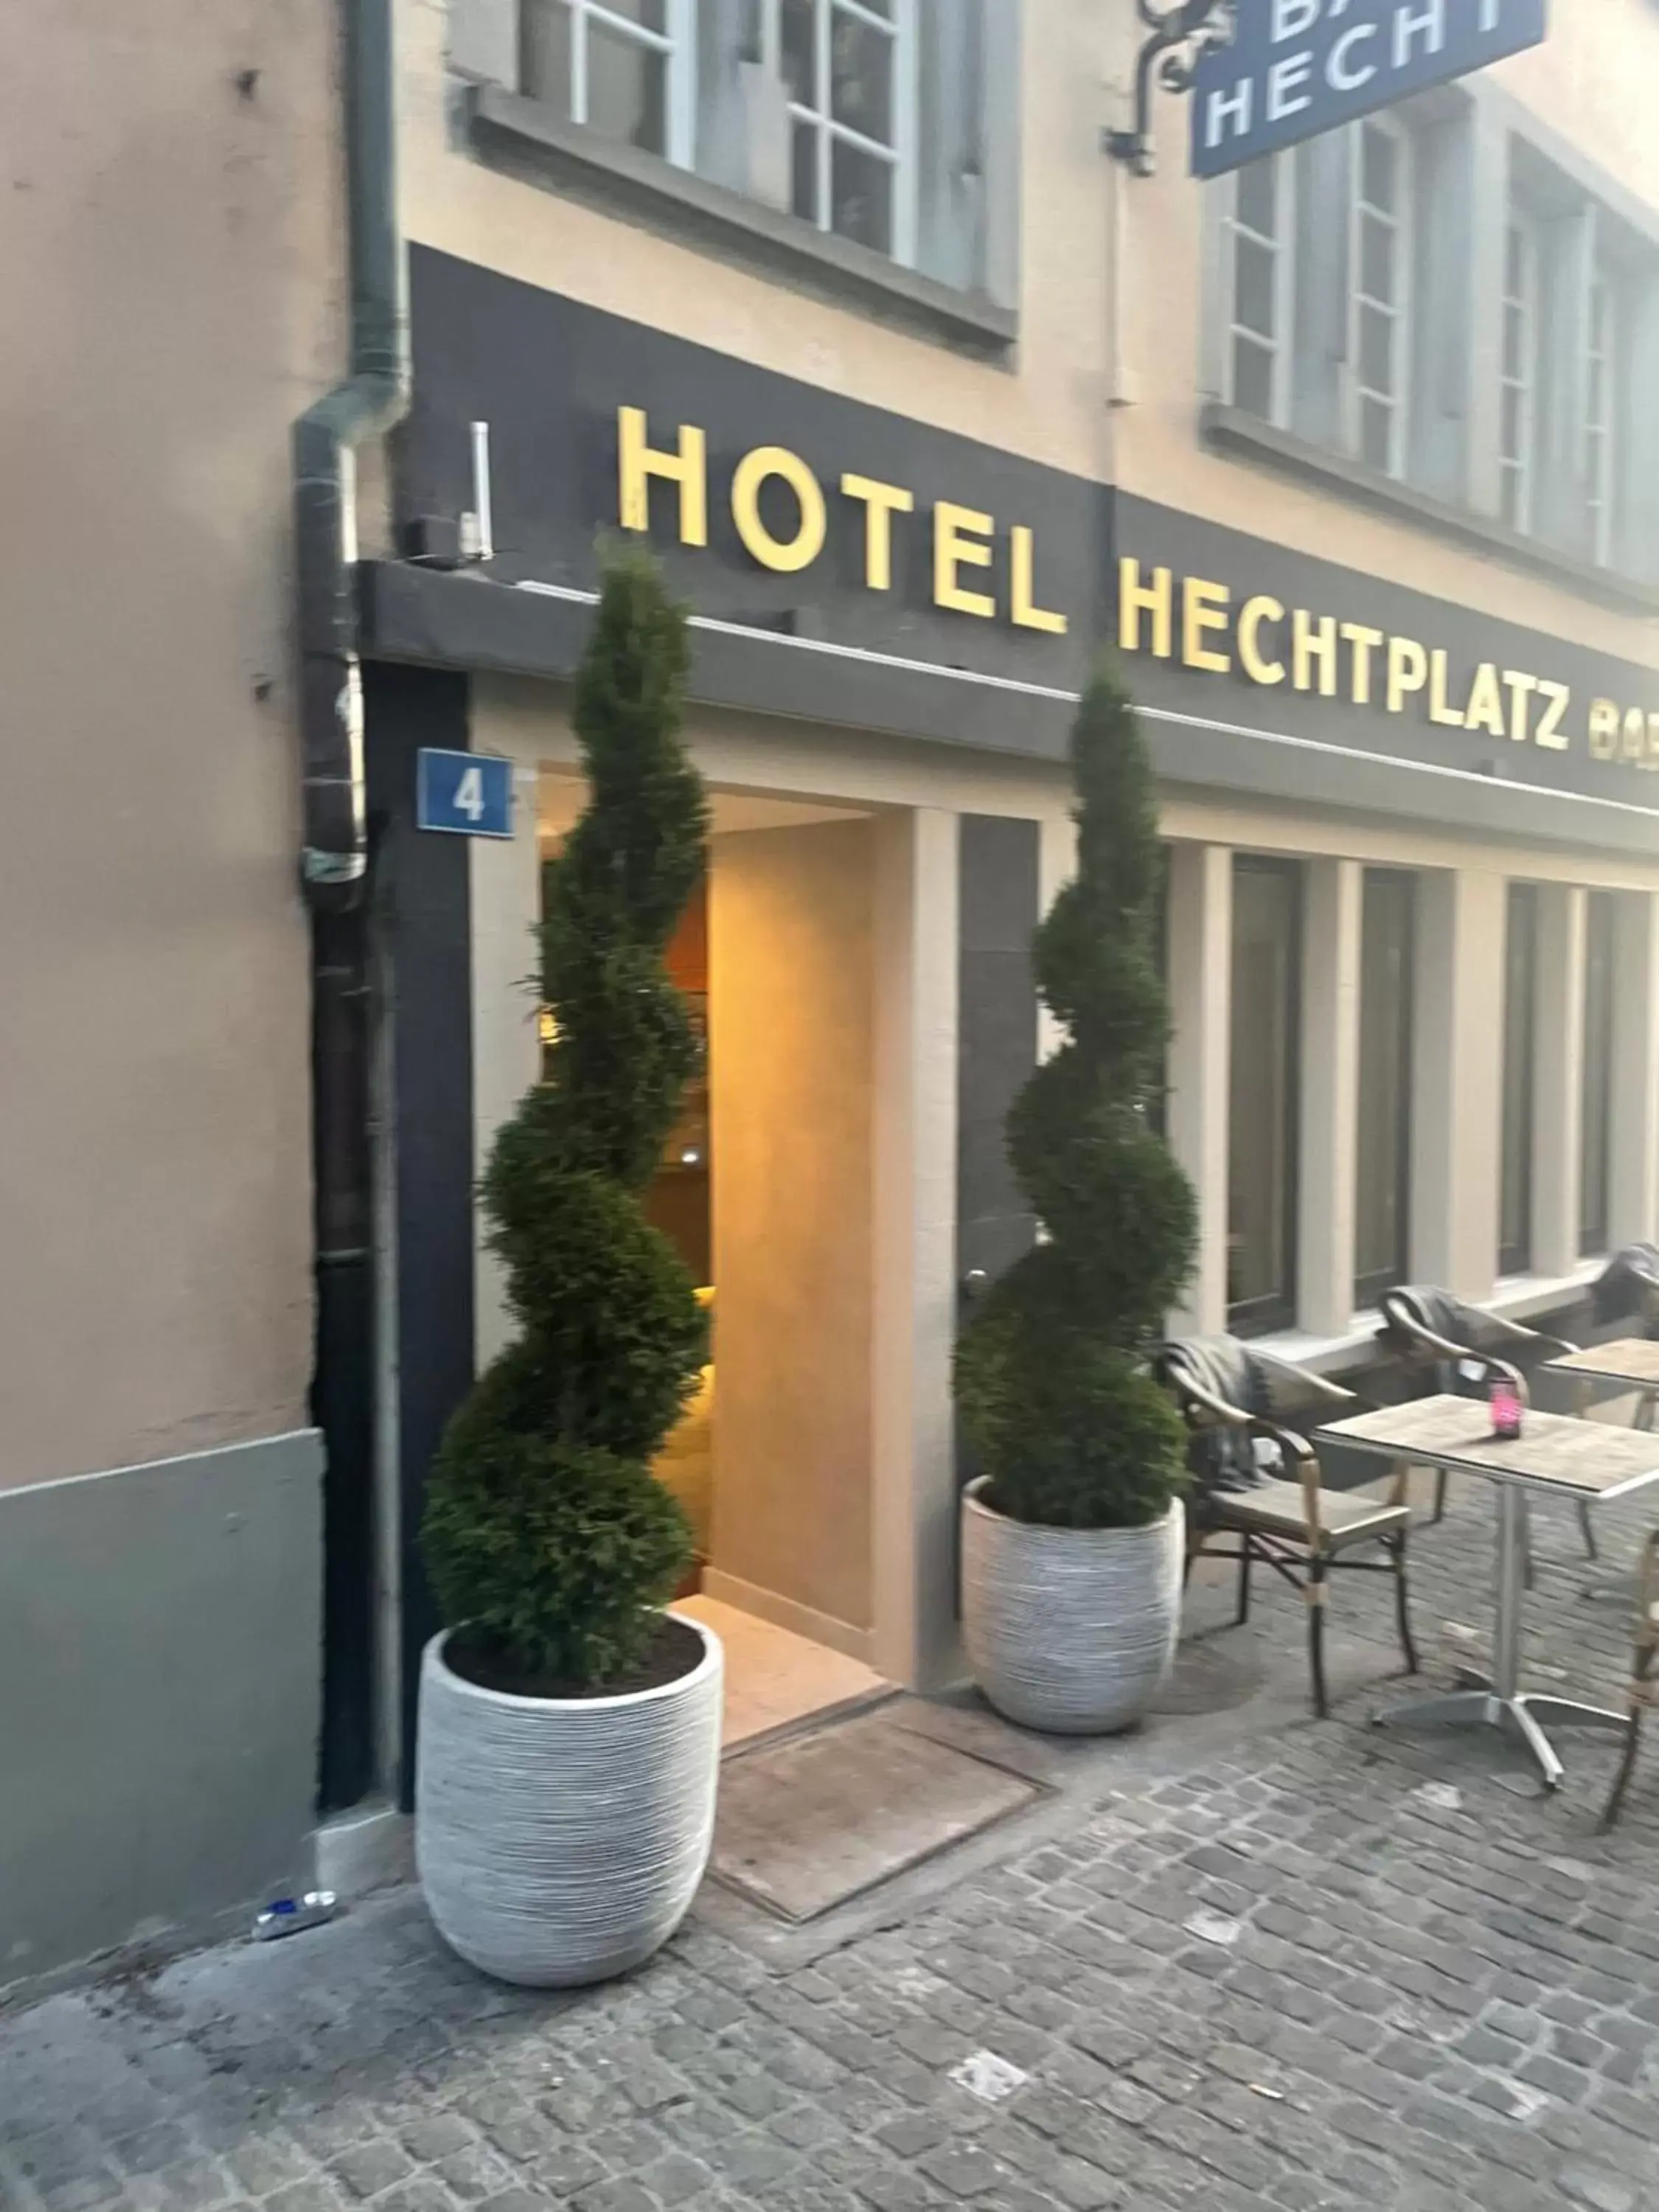 Property building in Hechtplatz Hotel - Self Check-in